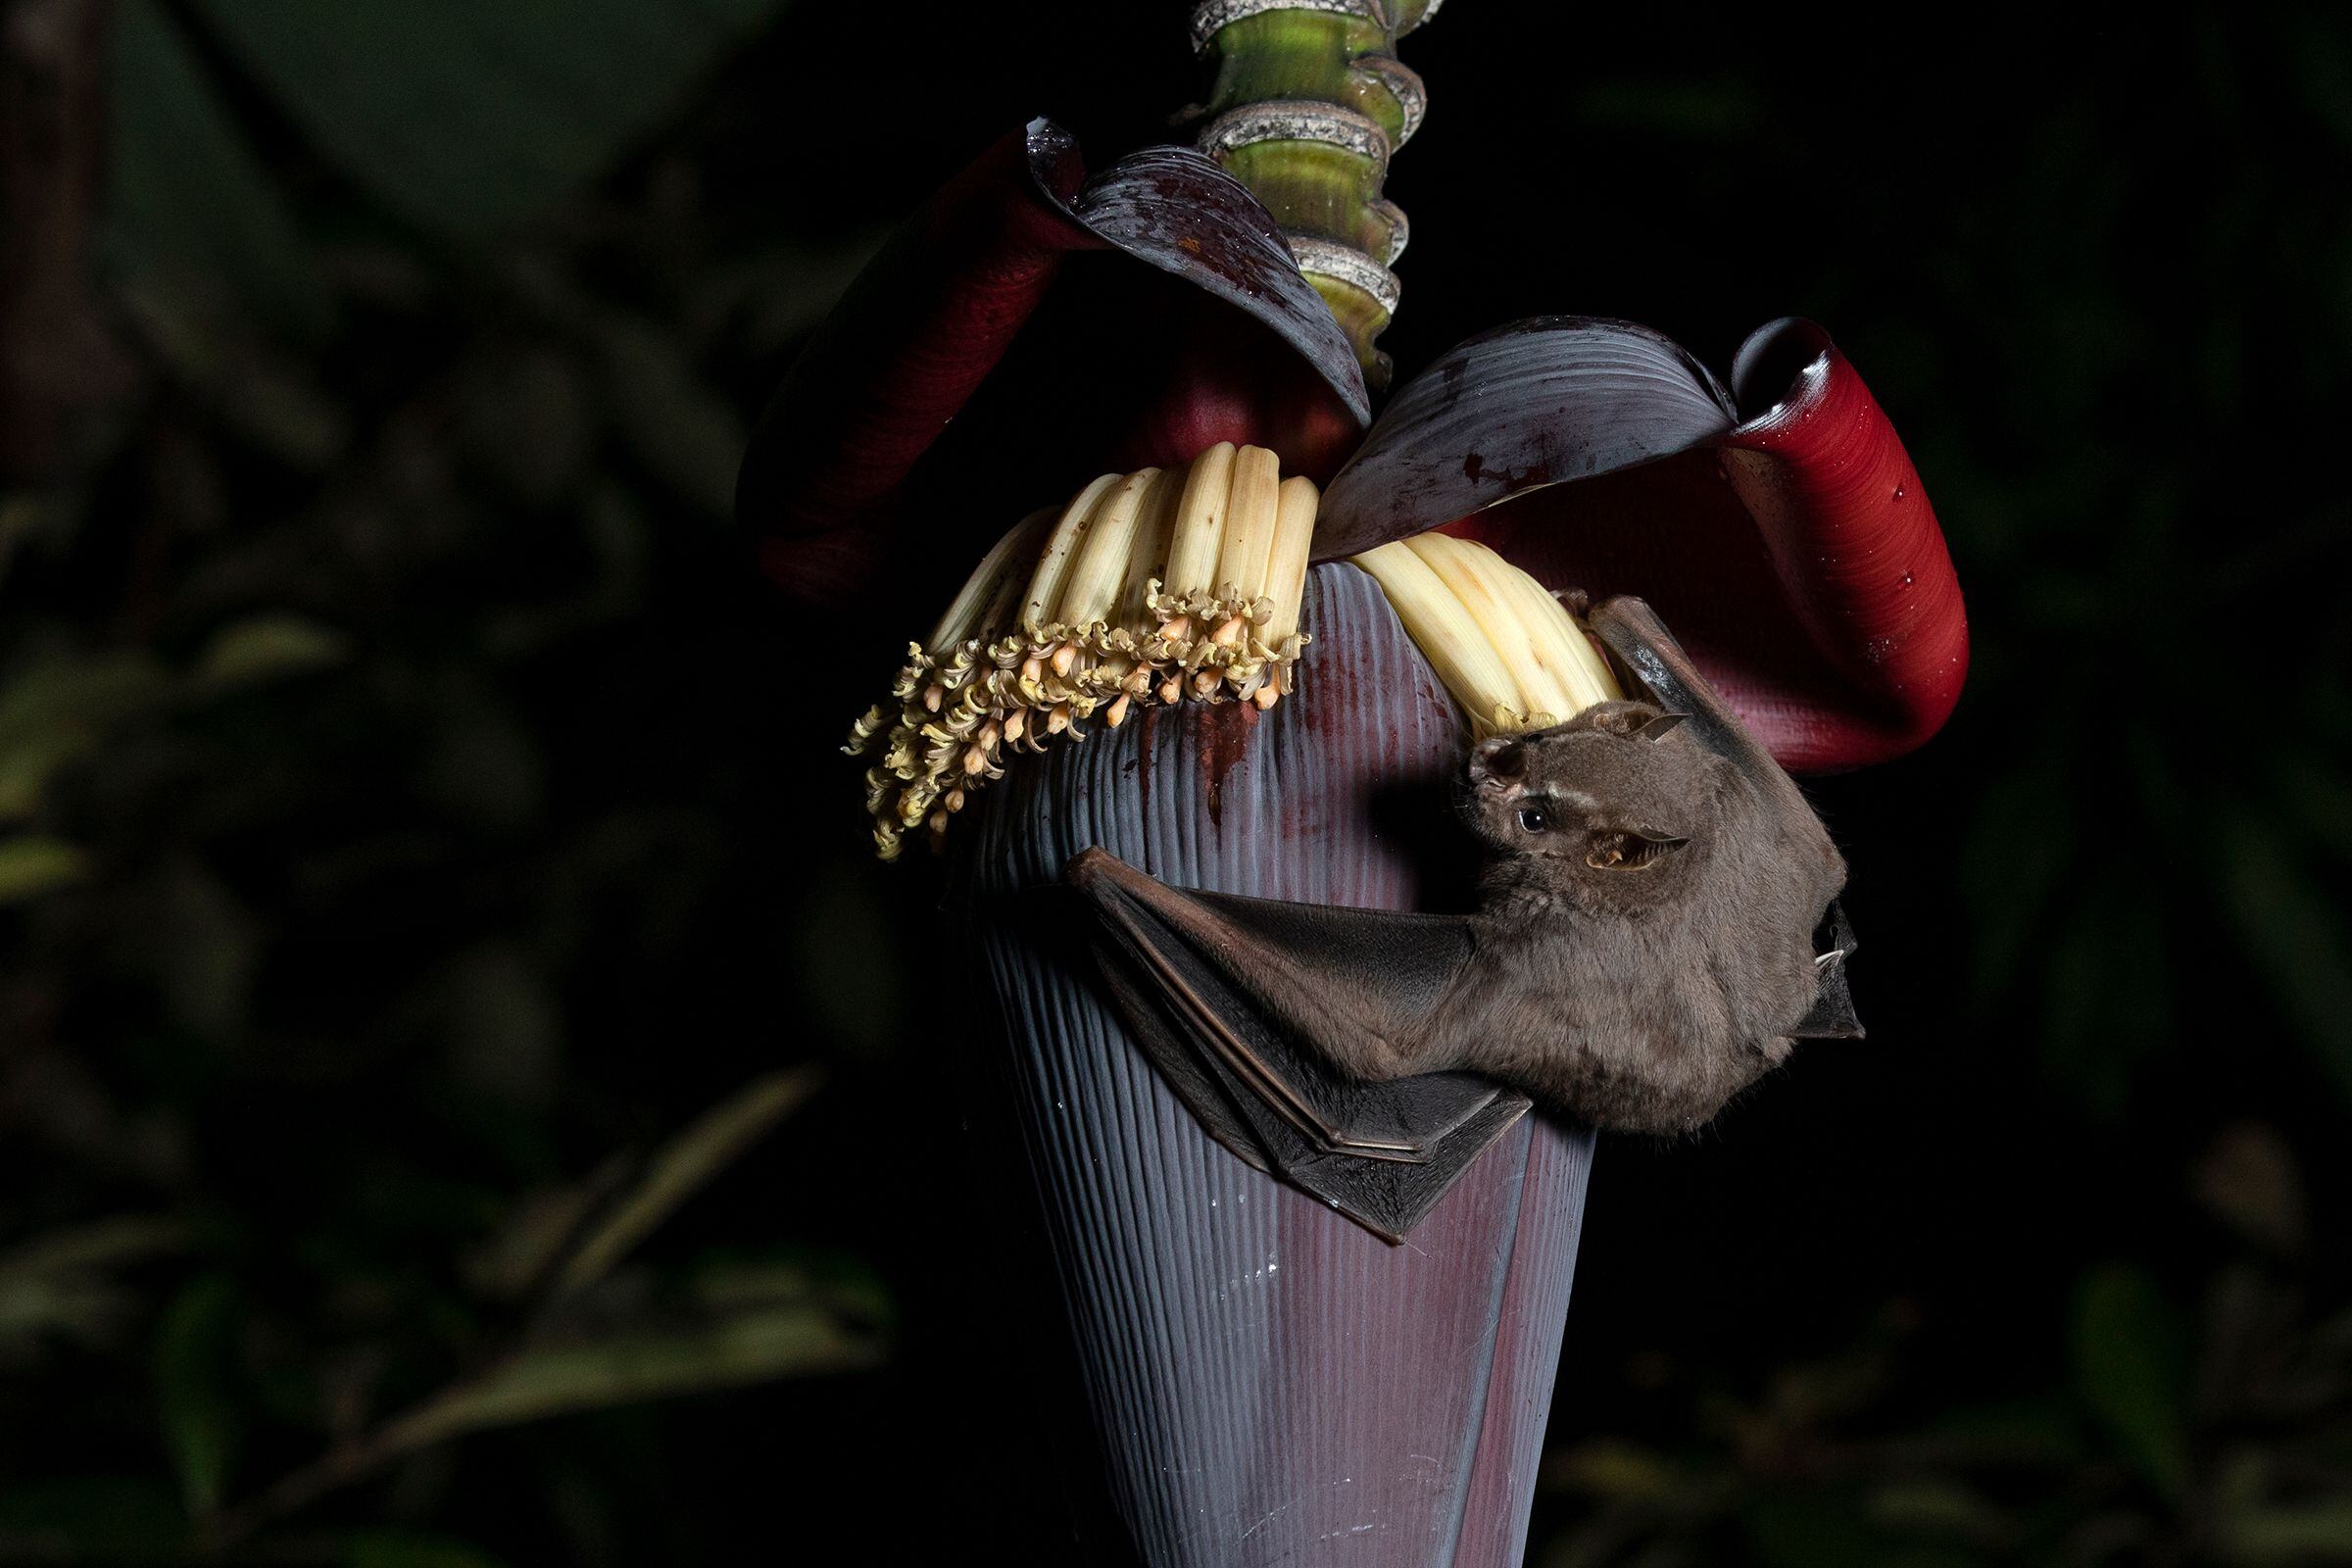 Muercielago tomando nectar de un tallo de guineos en Arraiján, Panamá Oeste. Octubre 2018. Foto: Alexander Arosemena